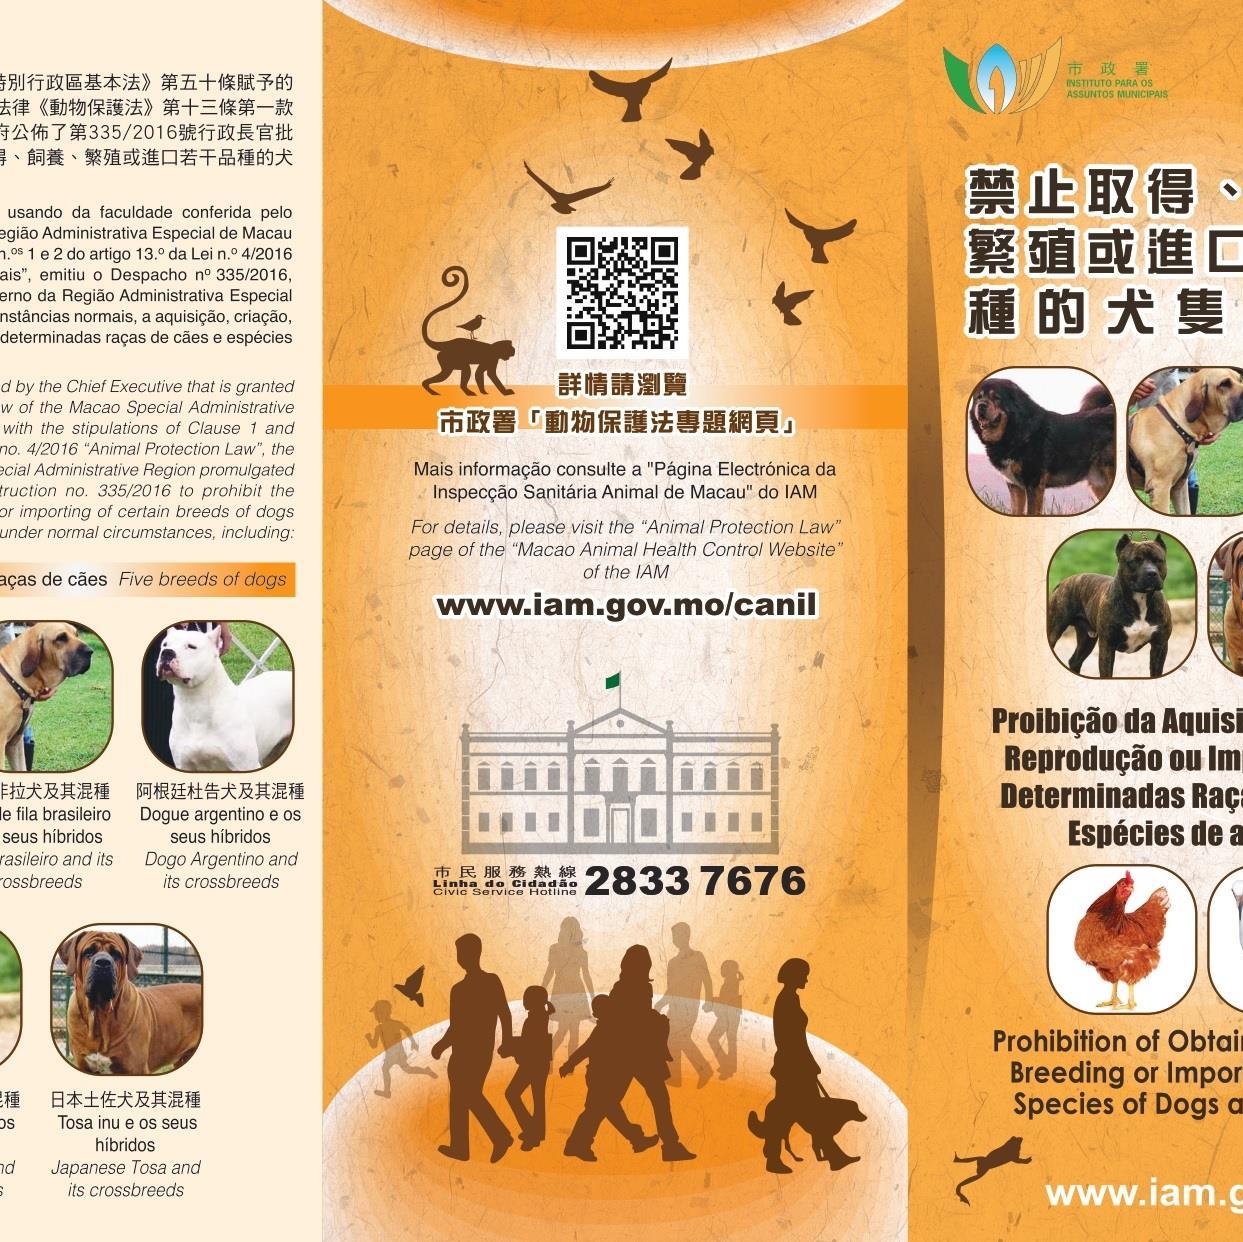 Proibição de Aquisição, Criação, Reprodução ou Importação de Determinadas Raças de Cães e Espécies de animais (I) 